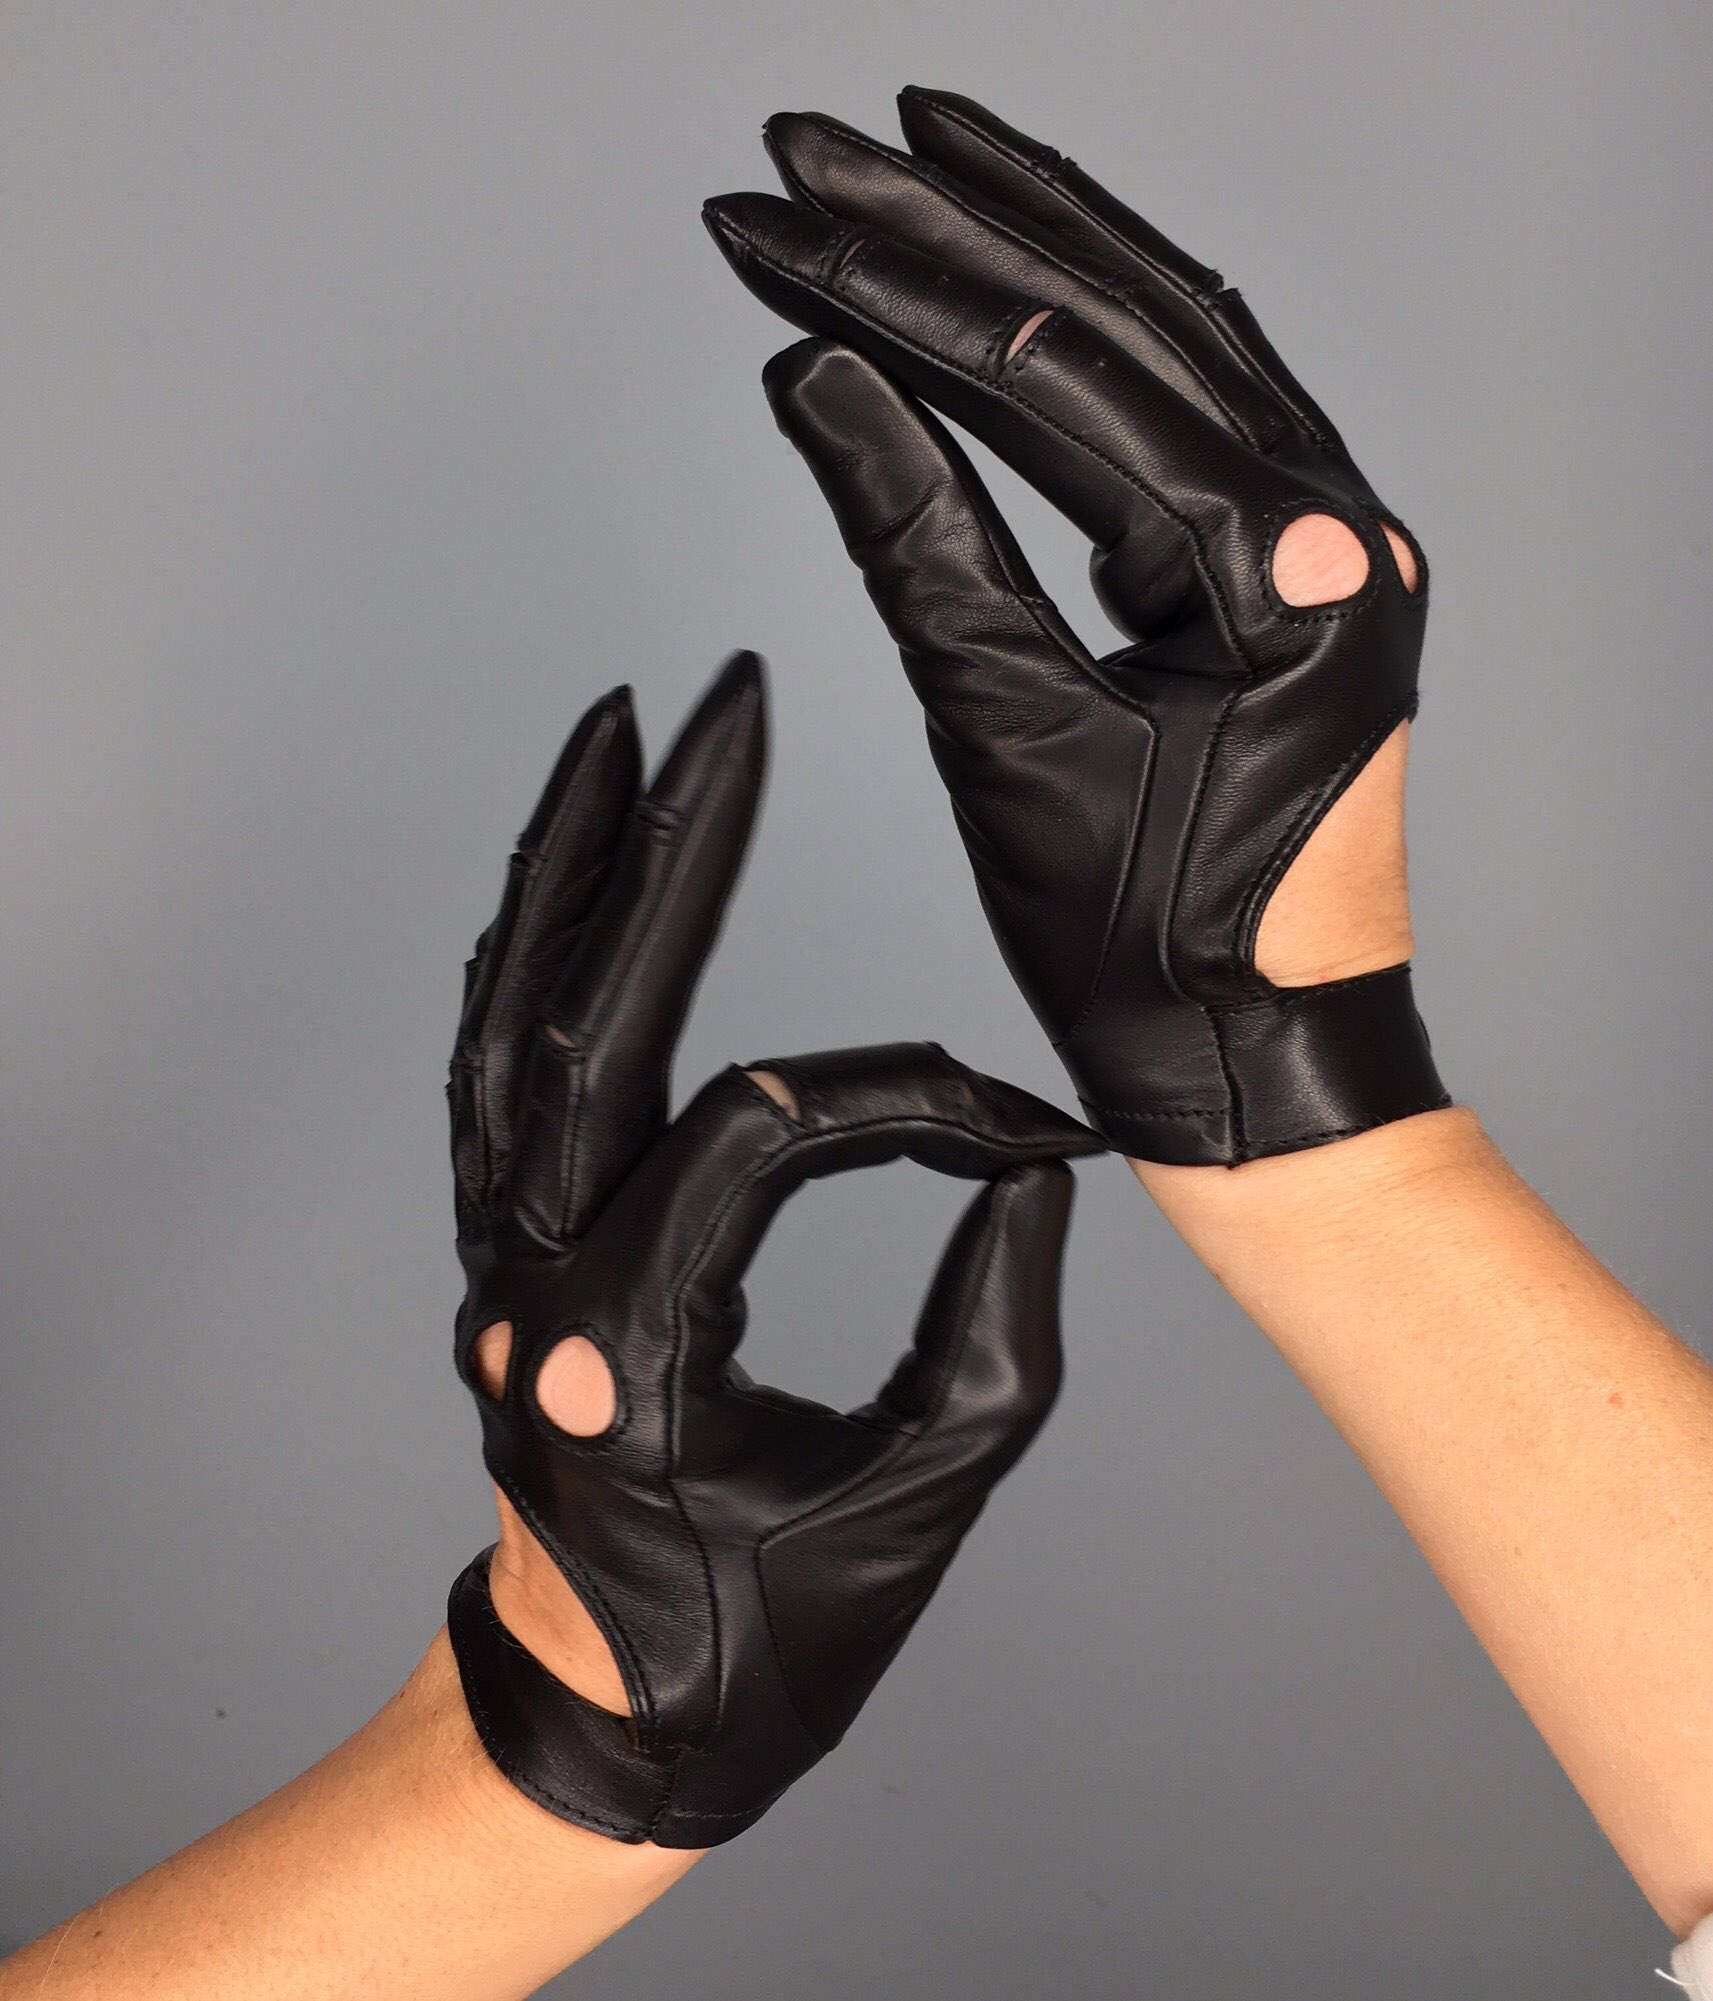 guantes de clase alta para mujer Accesorios Guantes y manoplas Guantes para conducir DDBESPOKESTUDIO Guantes de mujer de lujo de todos los días guantes personalizados únicos 